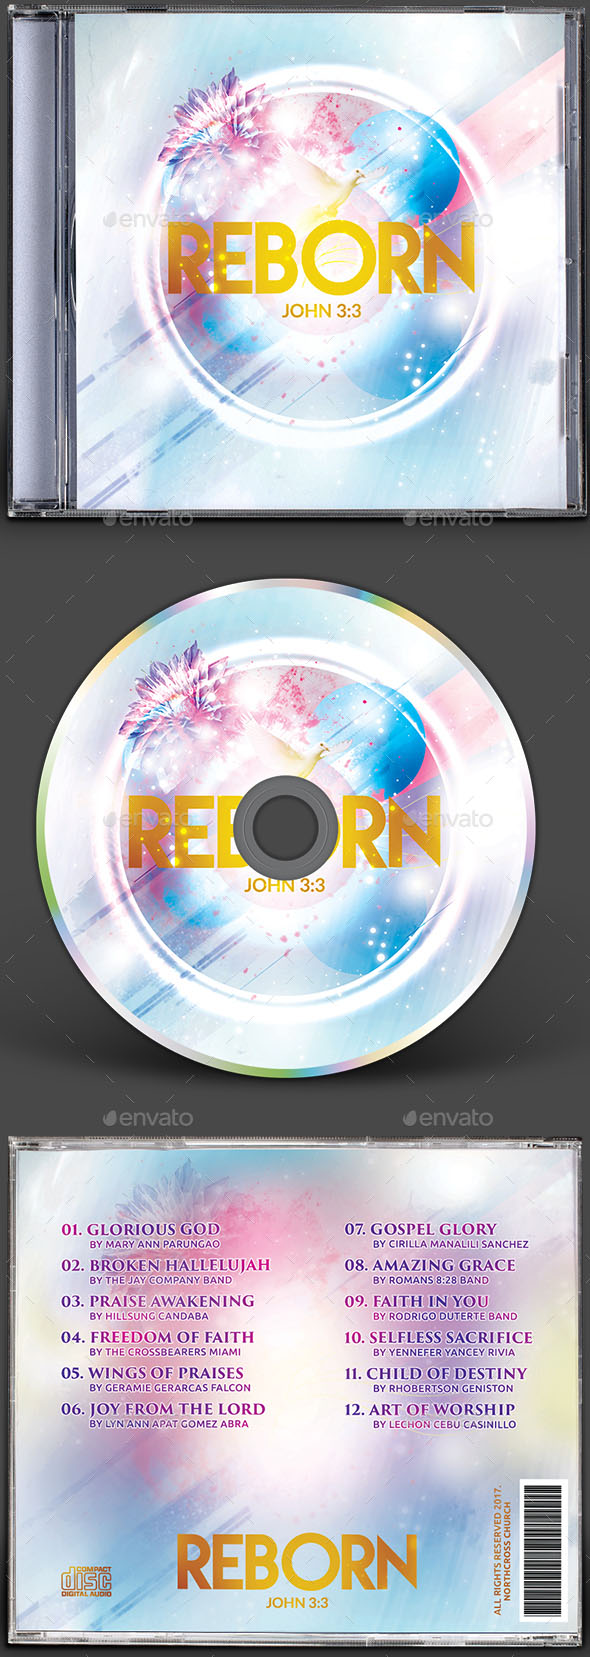 Premium Reborn CD Album Artwork